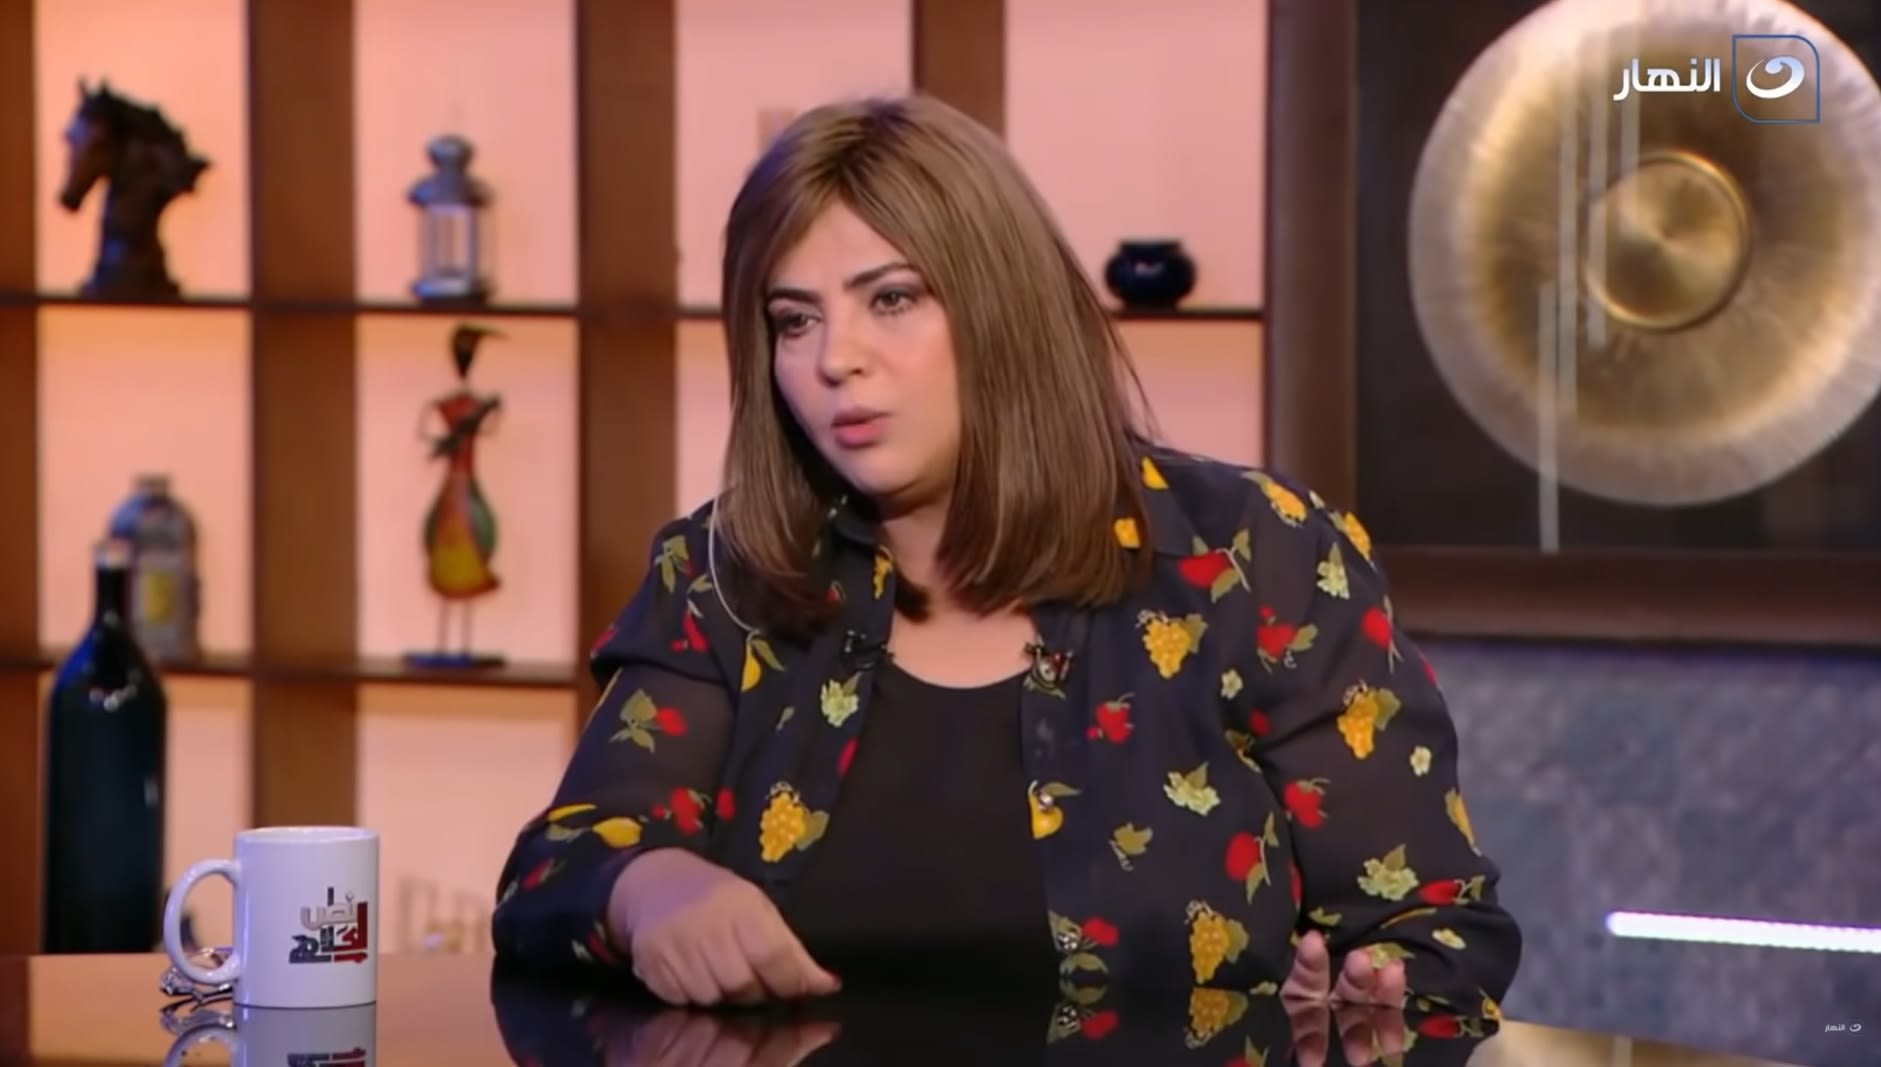 الفنانة المصرية وفاء مكي أثناء لقاء لها ضمن برنامج "نص الكلام" على قناة "النهار"